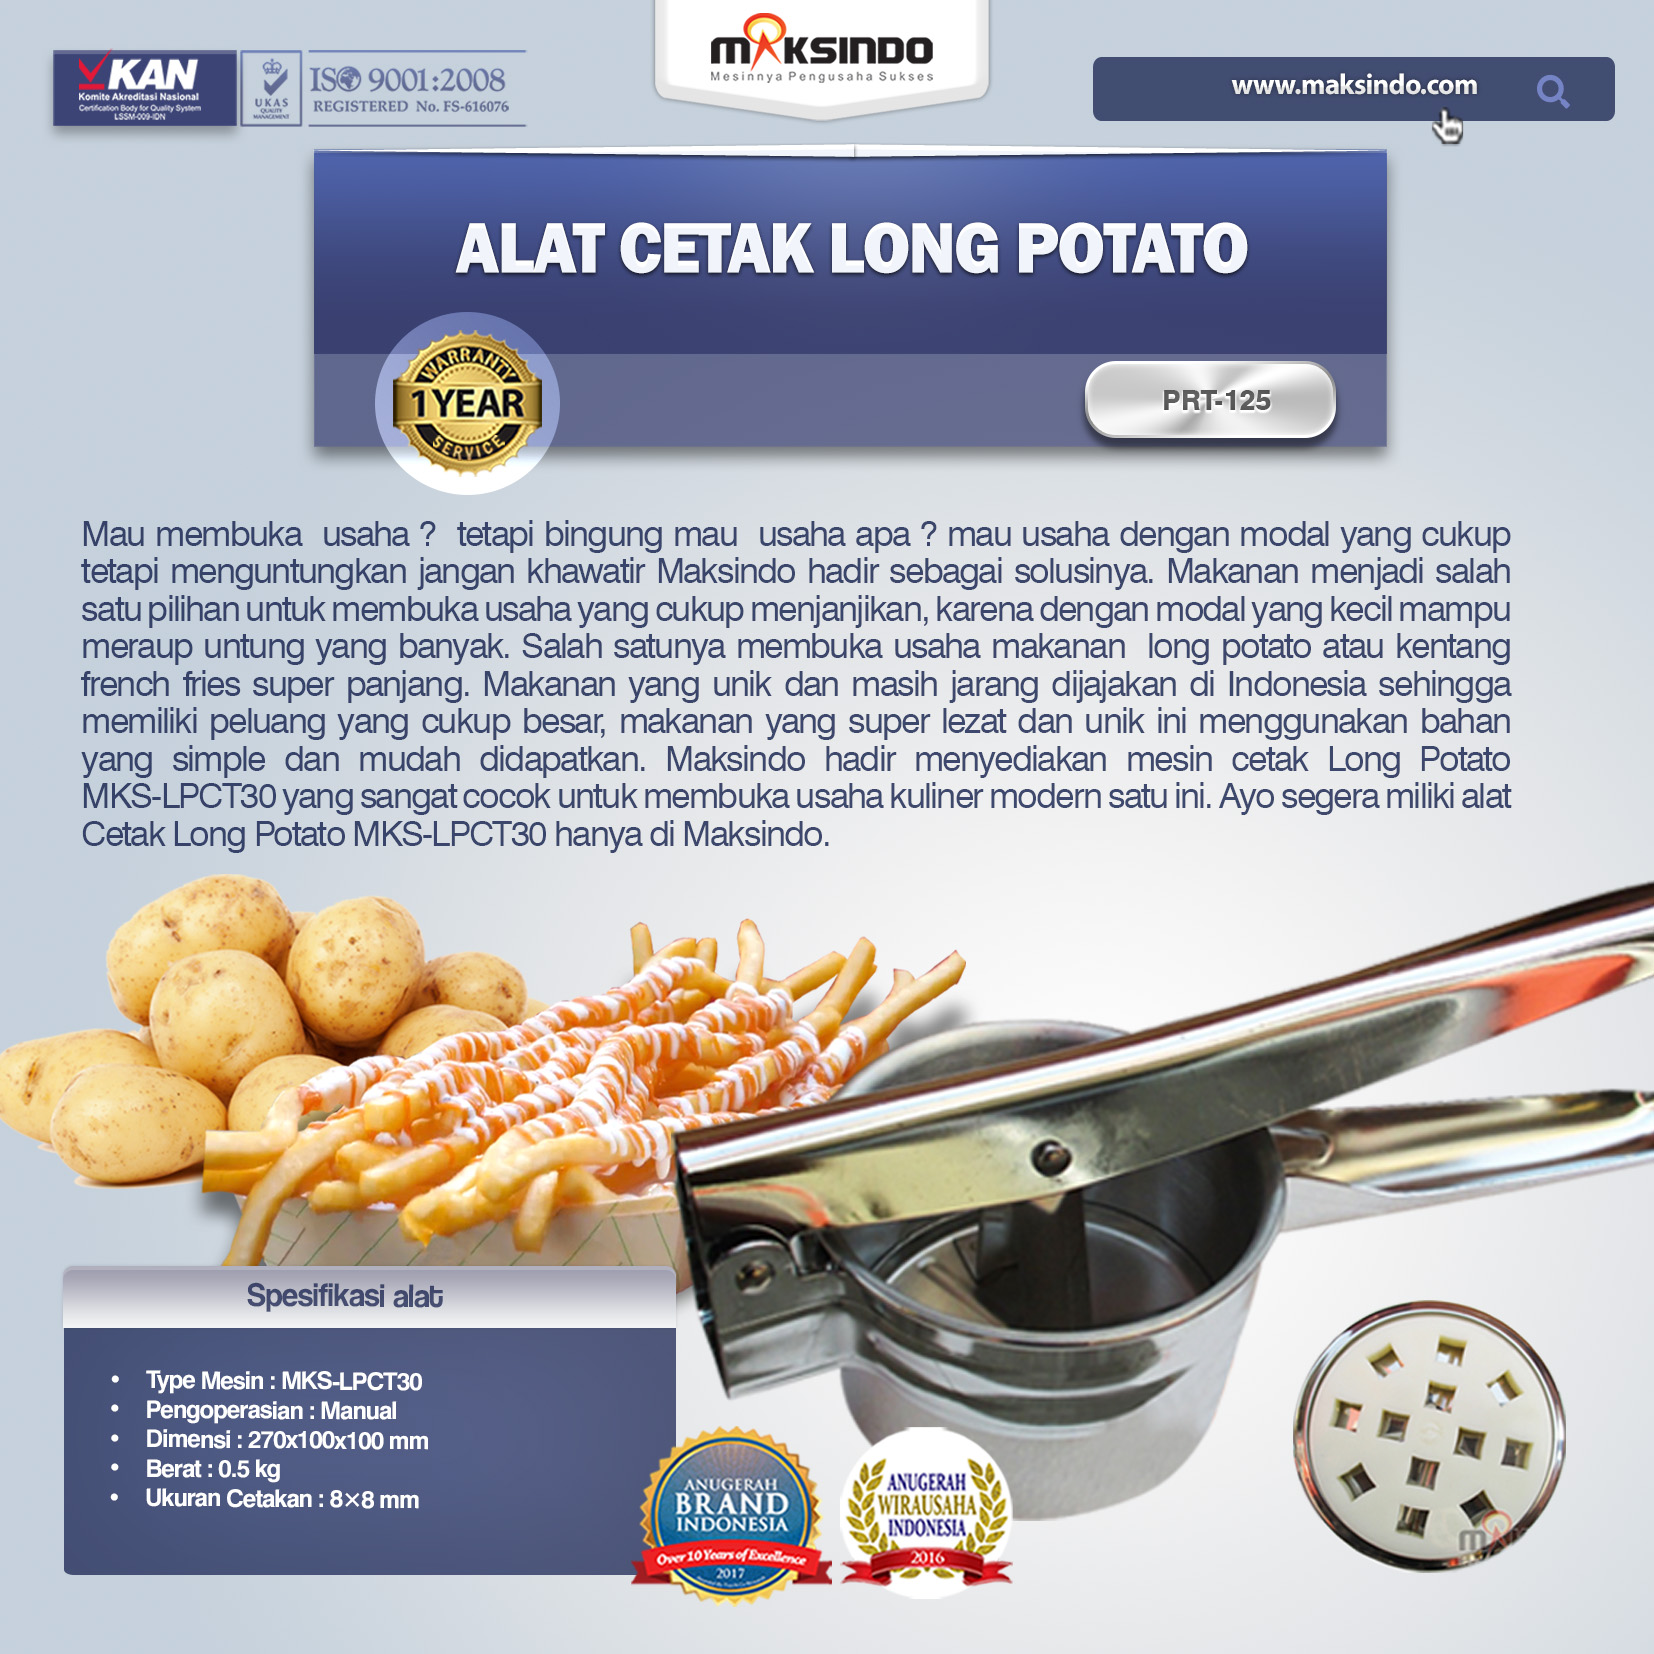 Jual Alat Cetak Long Potato MKS-LPCT30 di Malang